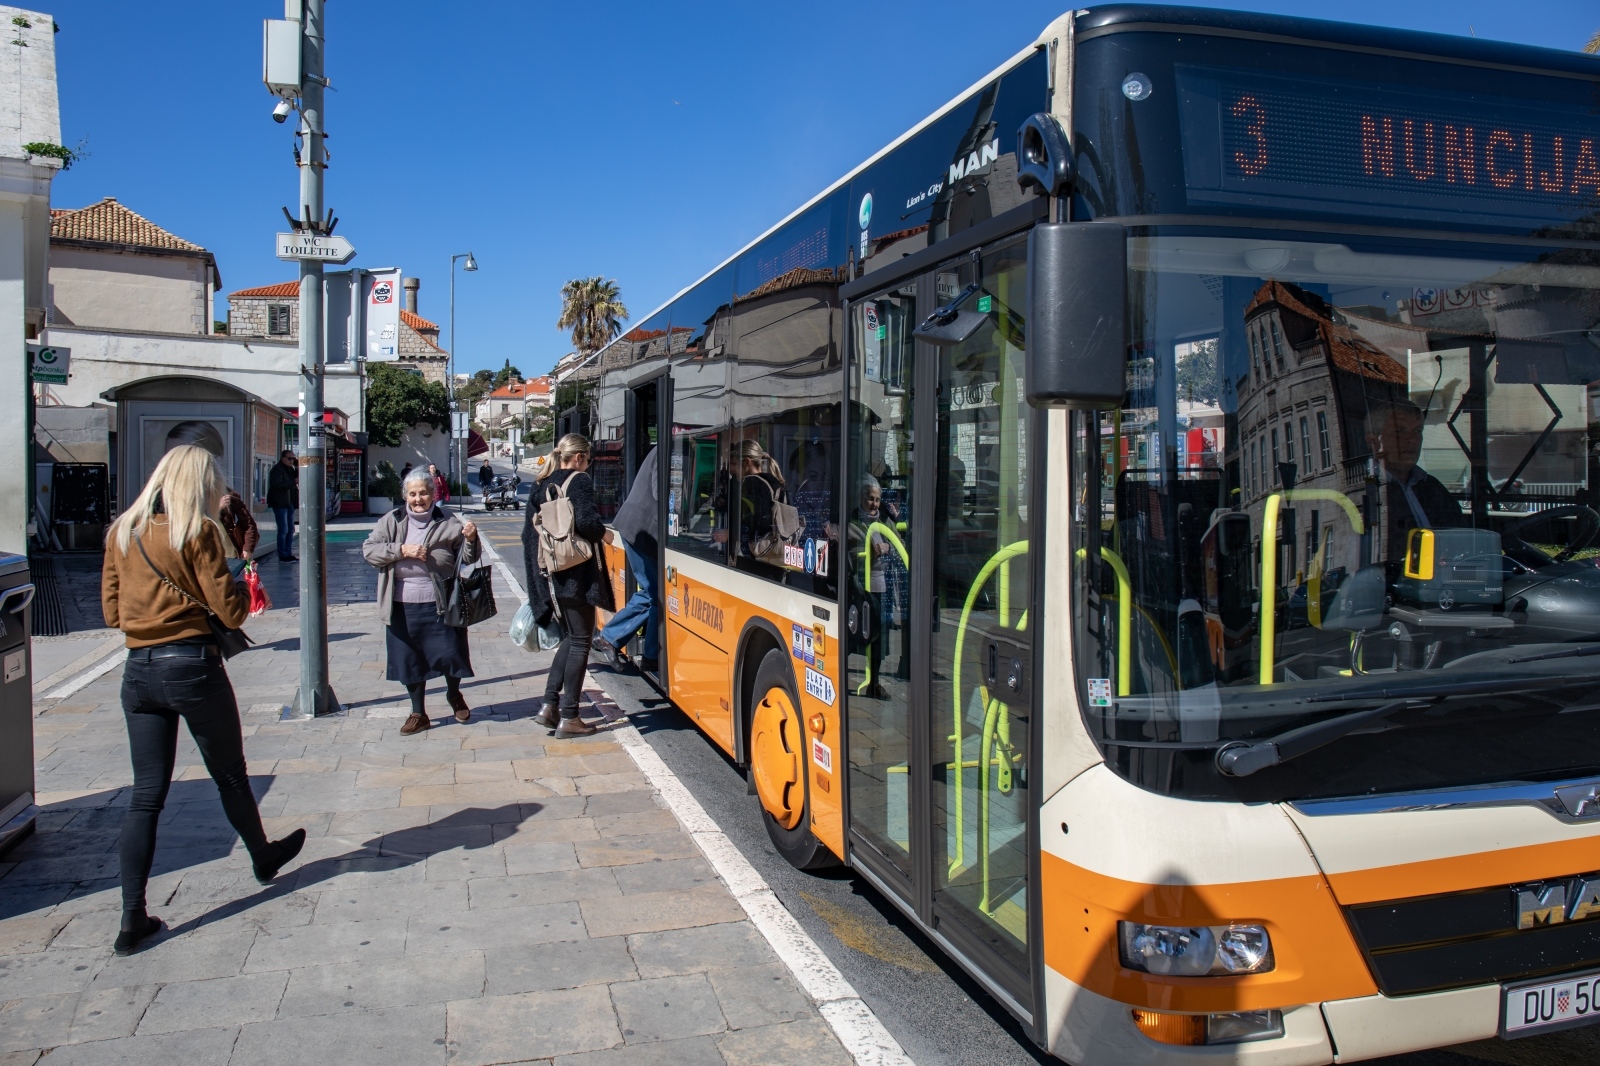 Na najfrekventnijim linijama će se uvesti i zglobni autobusi, kako bi putnici imali što više mjesta, odnosno, da bi dolazili u što manji doticaj jedni s drugima.